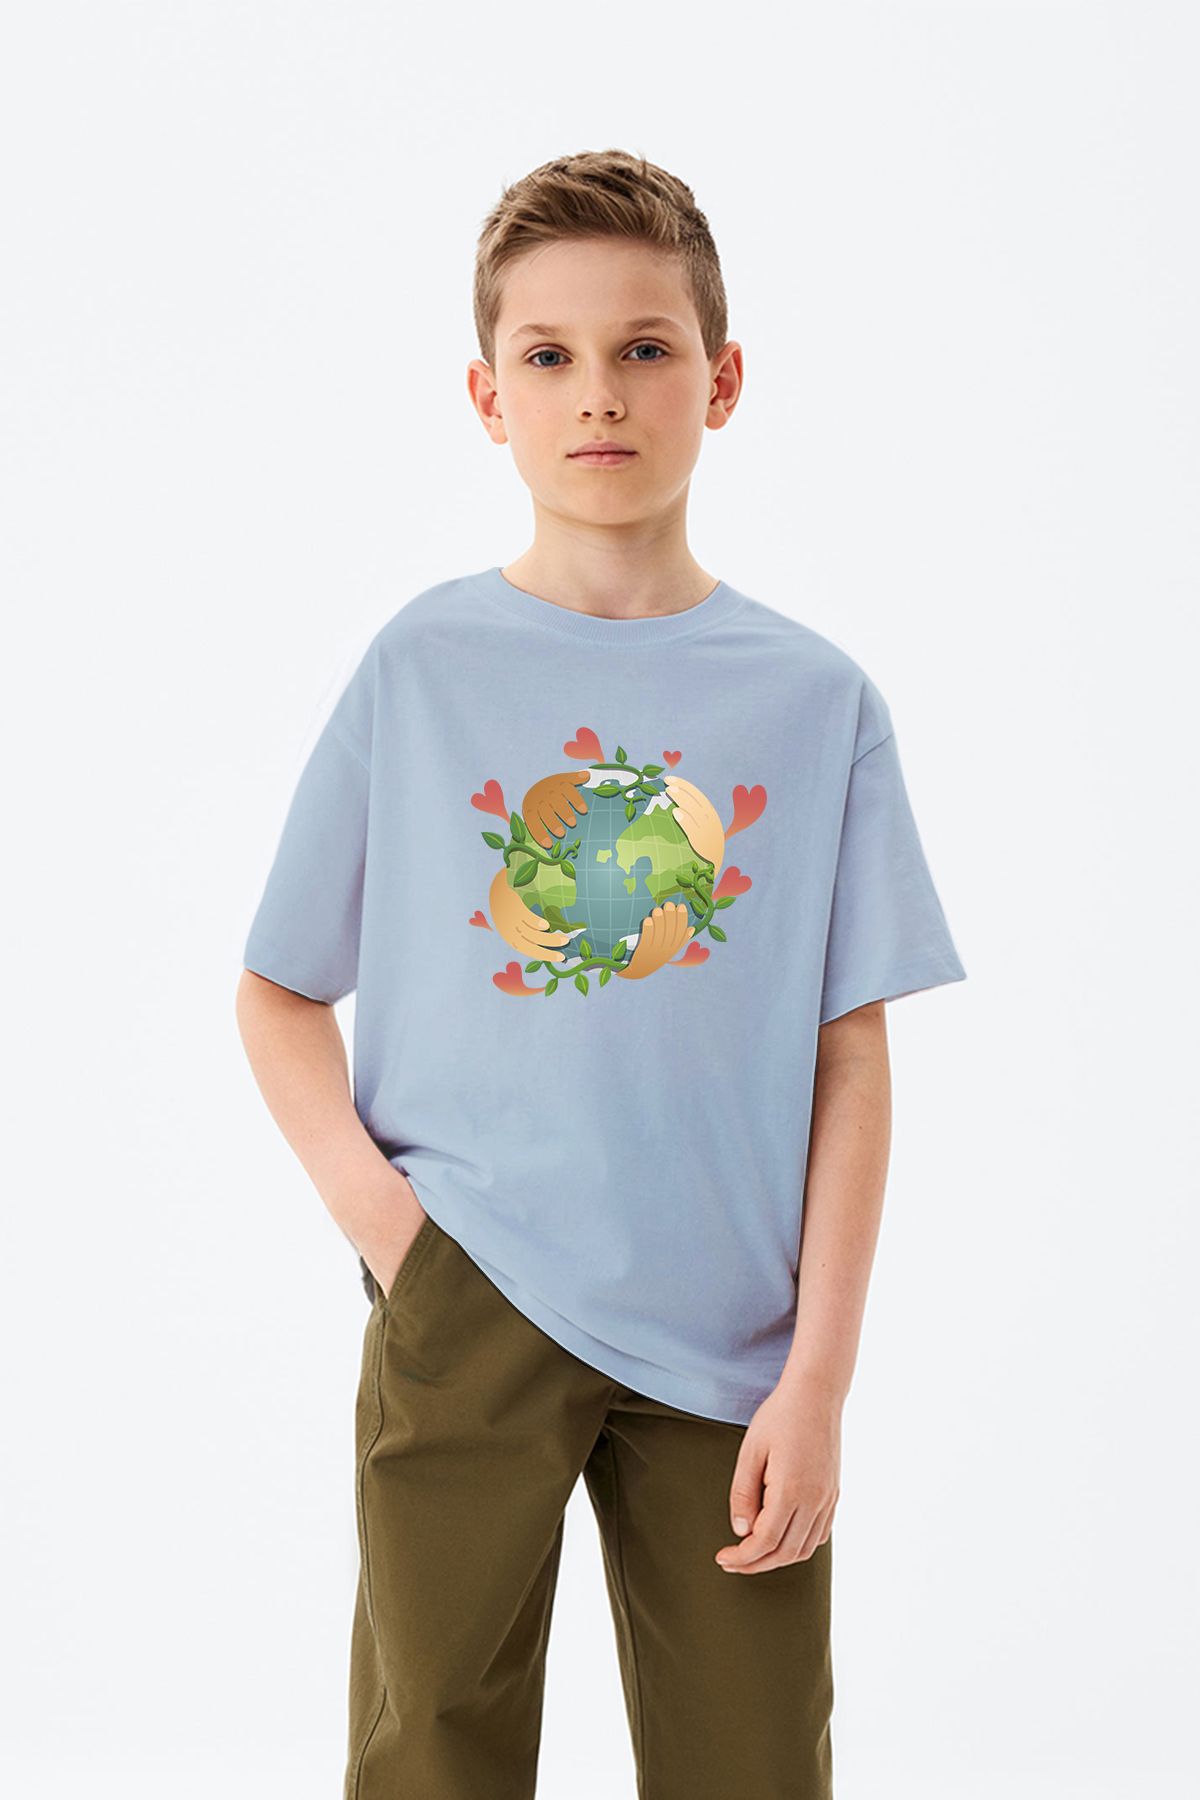 ADABEBEK Dünya Desenli Çocuklar El ele Baskılı 23 Nisan Özel Erkek Çocuk Tişört